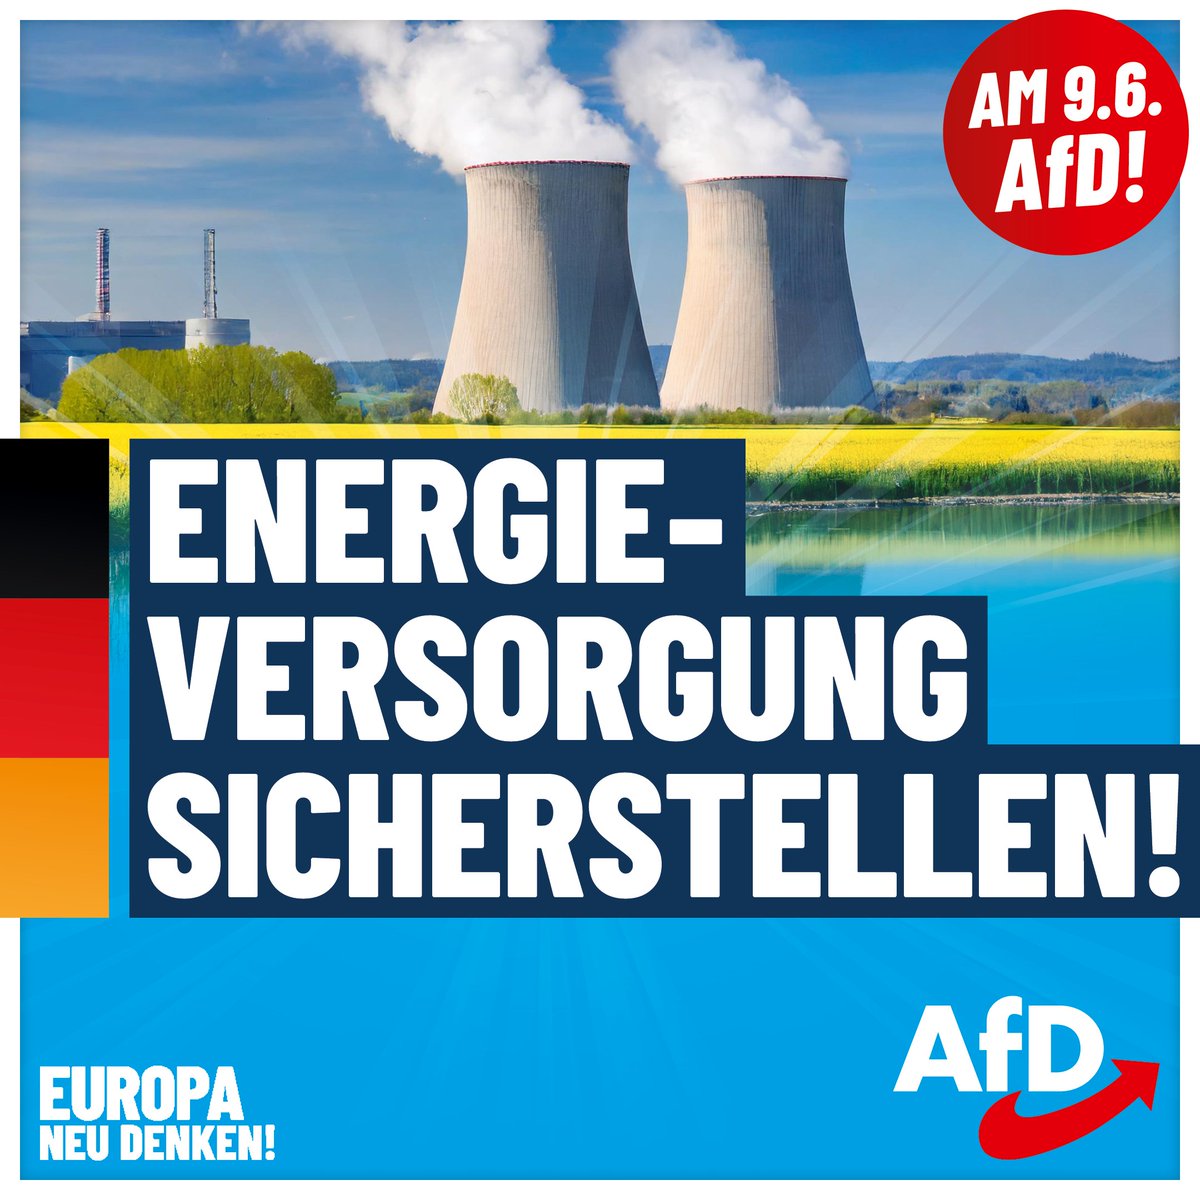 Warum Deine Stromrechnung so hoch ist? Dank #Habeck und der #EU! Wir fordern einen ausgewogenen Energie-Mix, der auch #Kernenergie und #Braunkohle einschließt. #DeshalbAfD #AfD Informiere Dich jetzt auf pulse.ly/pm6dbbylyf über unsere Ziele für Europa!